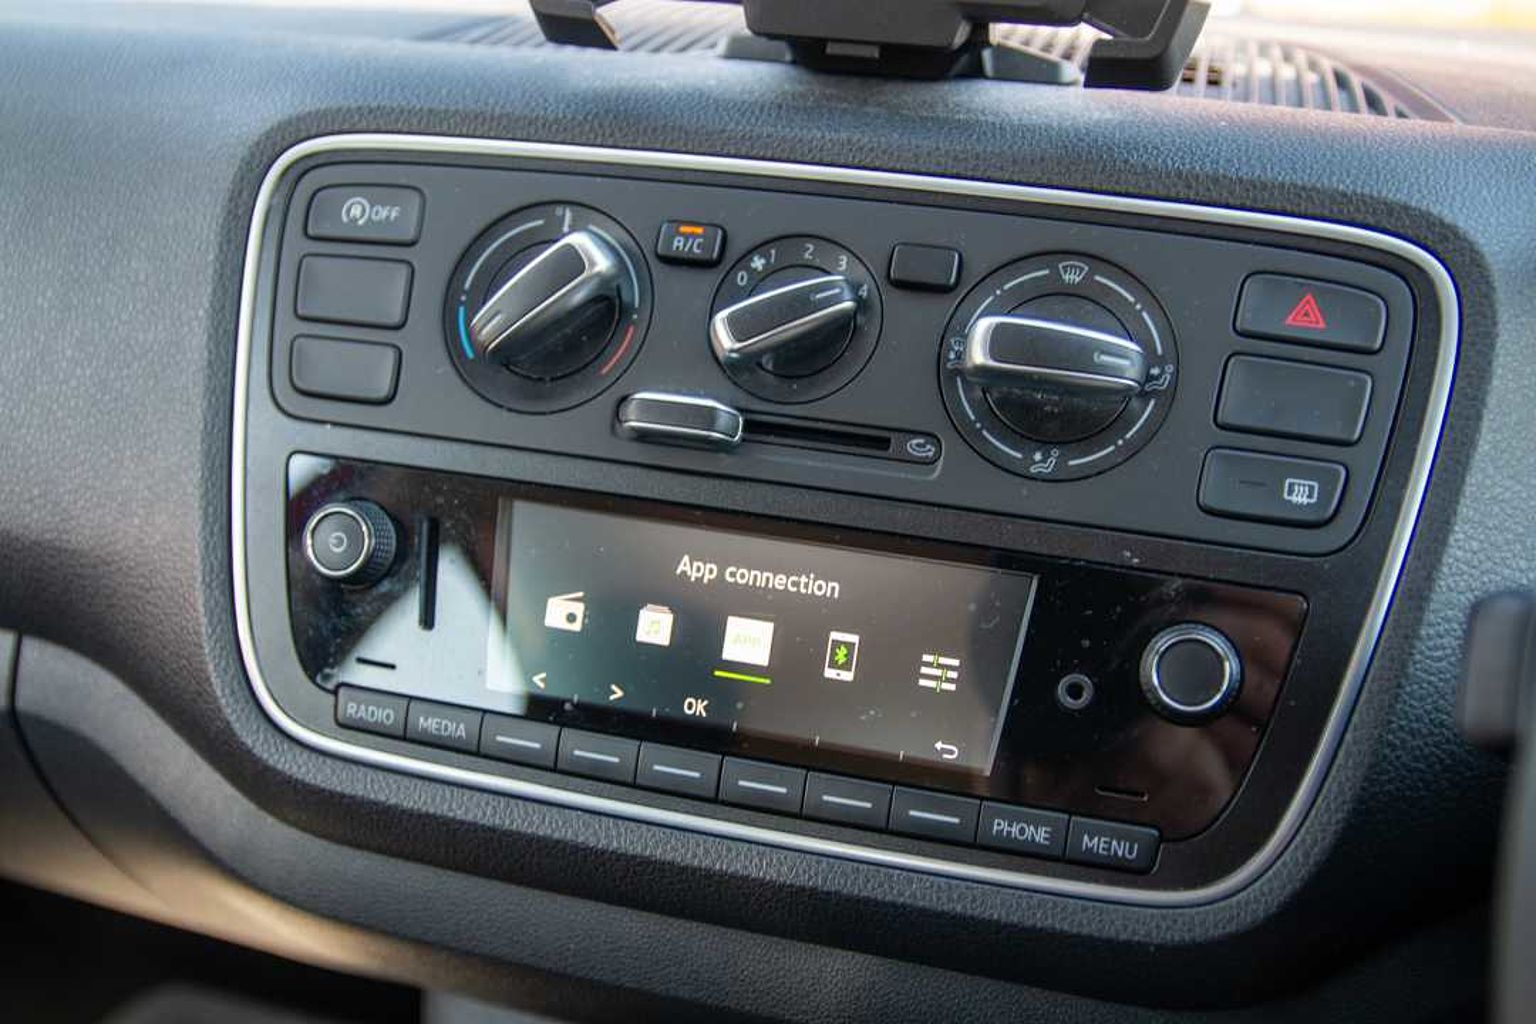 SKODA Citigo 1.0 MPI (60PS) SE Green Tech Hatchback 5-Dr